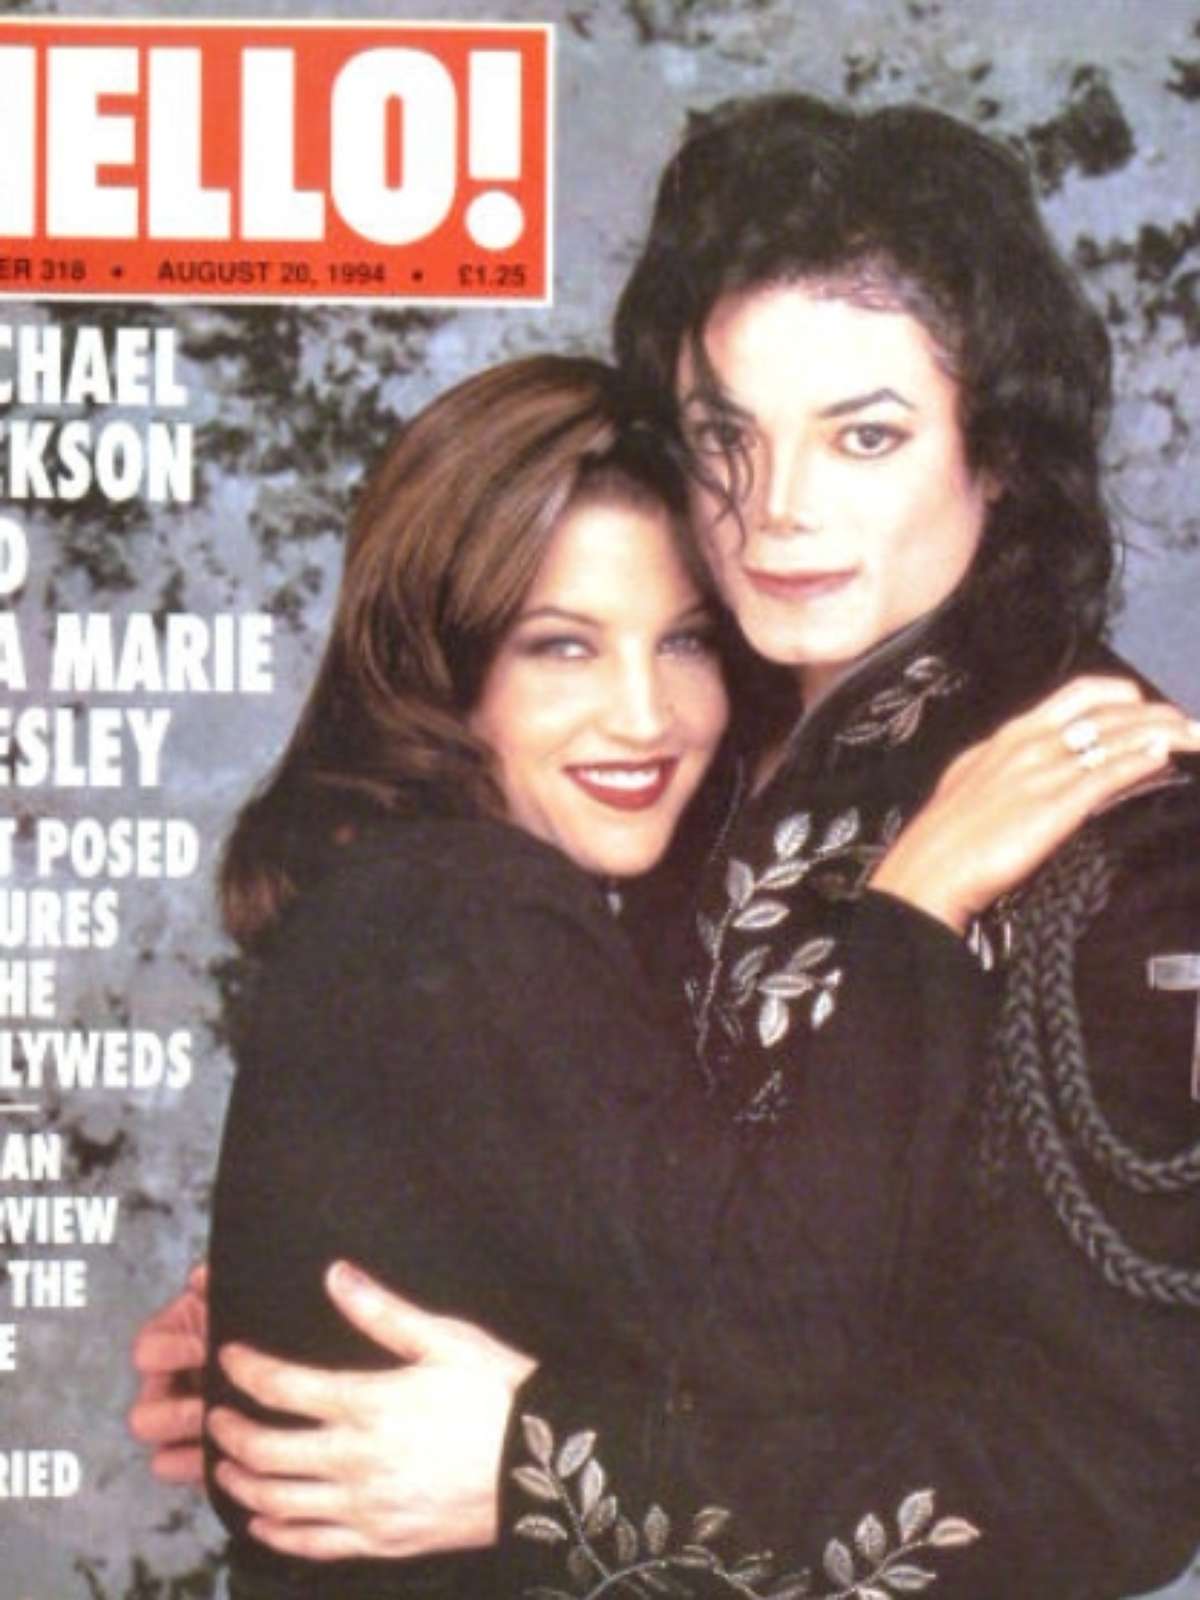 Lisa Marie Presley revelou detalhes íntimos do casamento com Michael Jackson foto